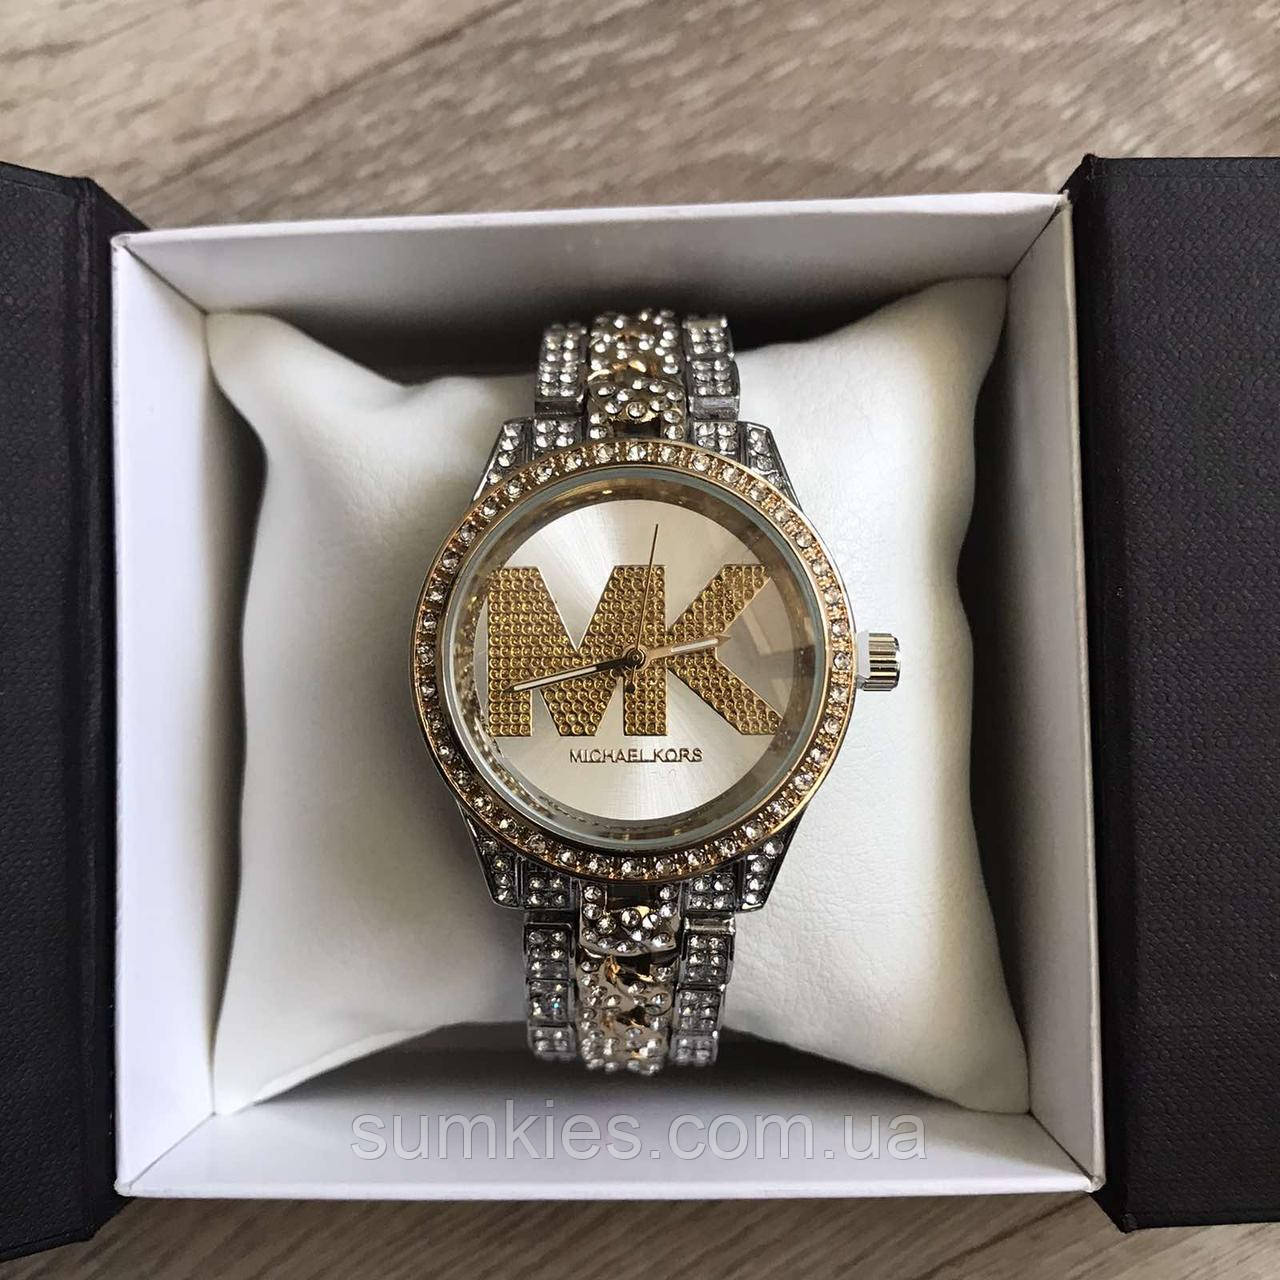 Жіночі годинники Michael Kors якісні . Брендові наручний годинник з камінням золотисті сріблясті